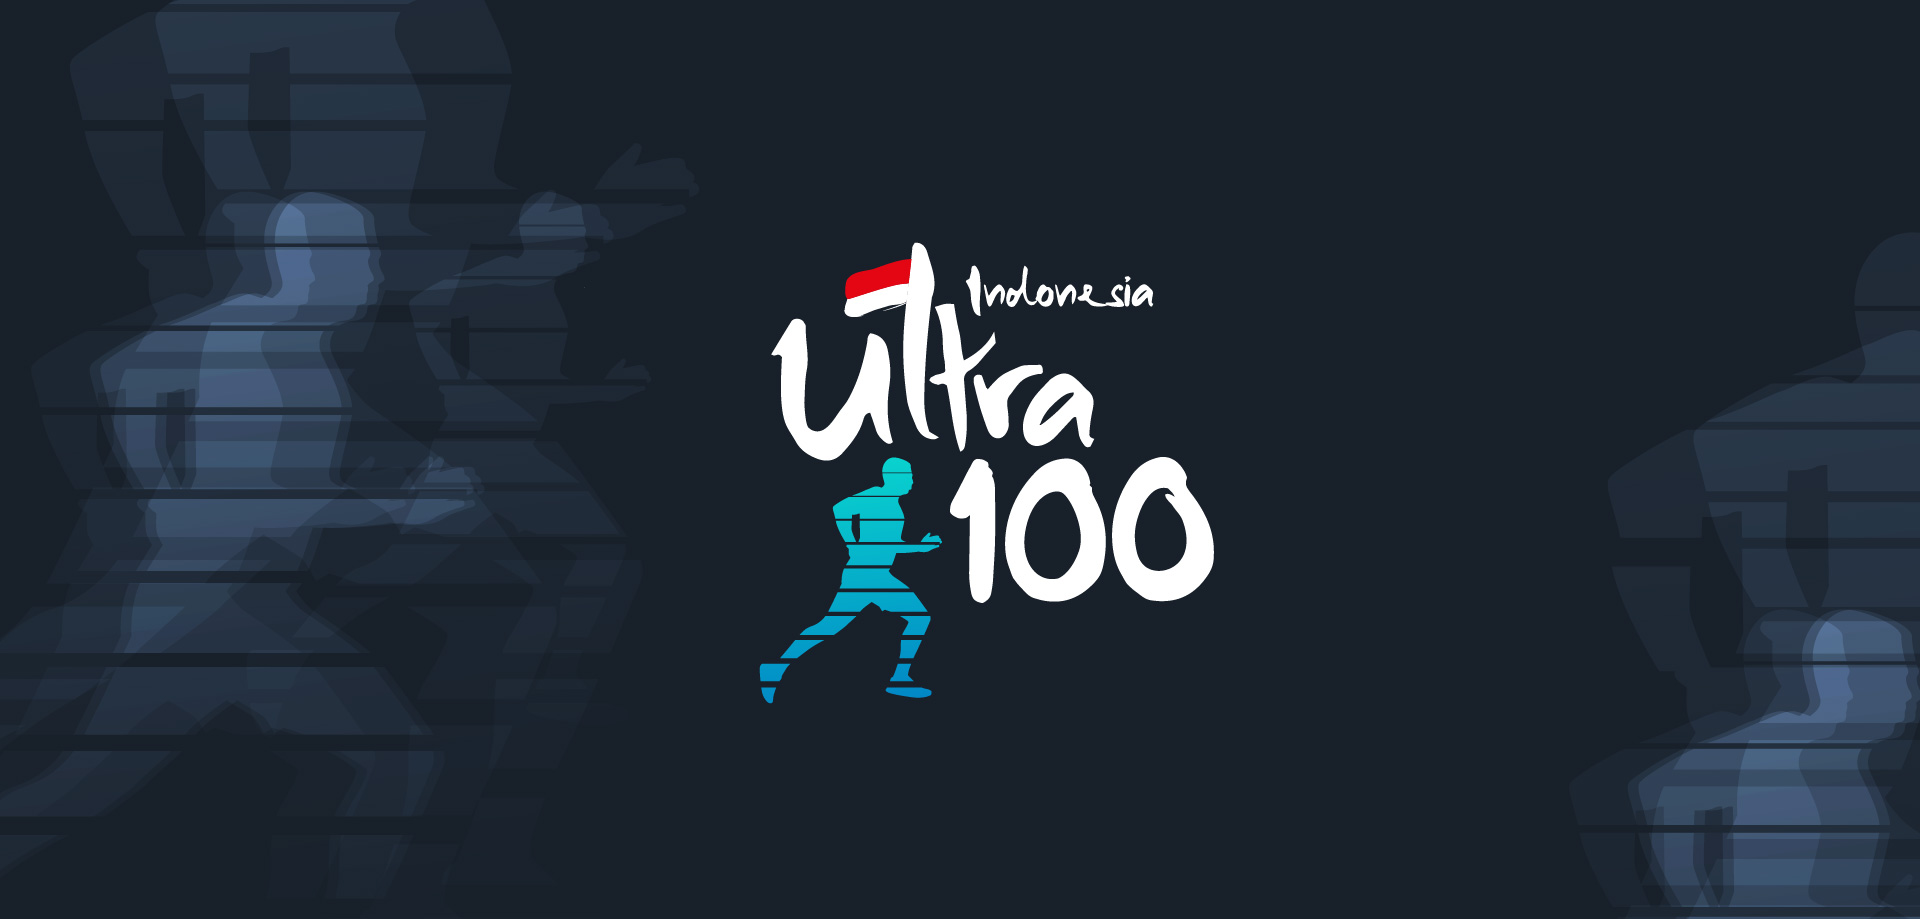 Indonesia Ultra 100 Jakarta, Gerakan Mendukung Visi Indonesia Emas 2045 melalui BERLARI 